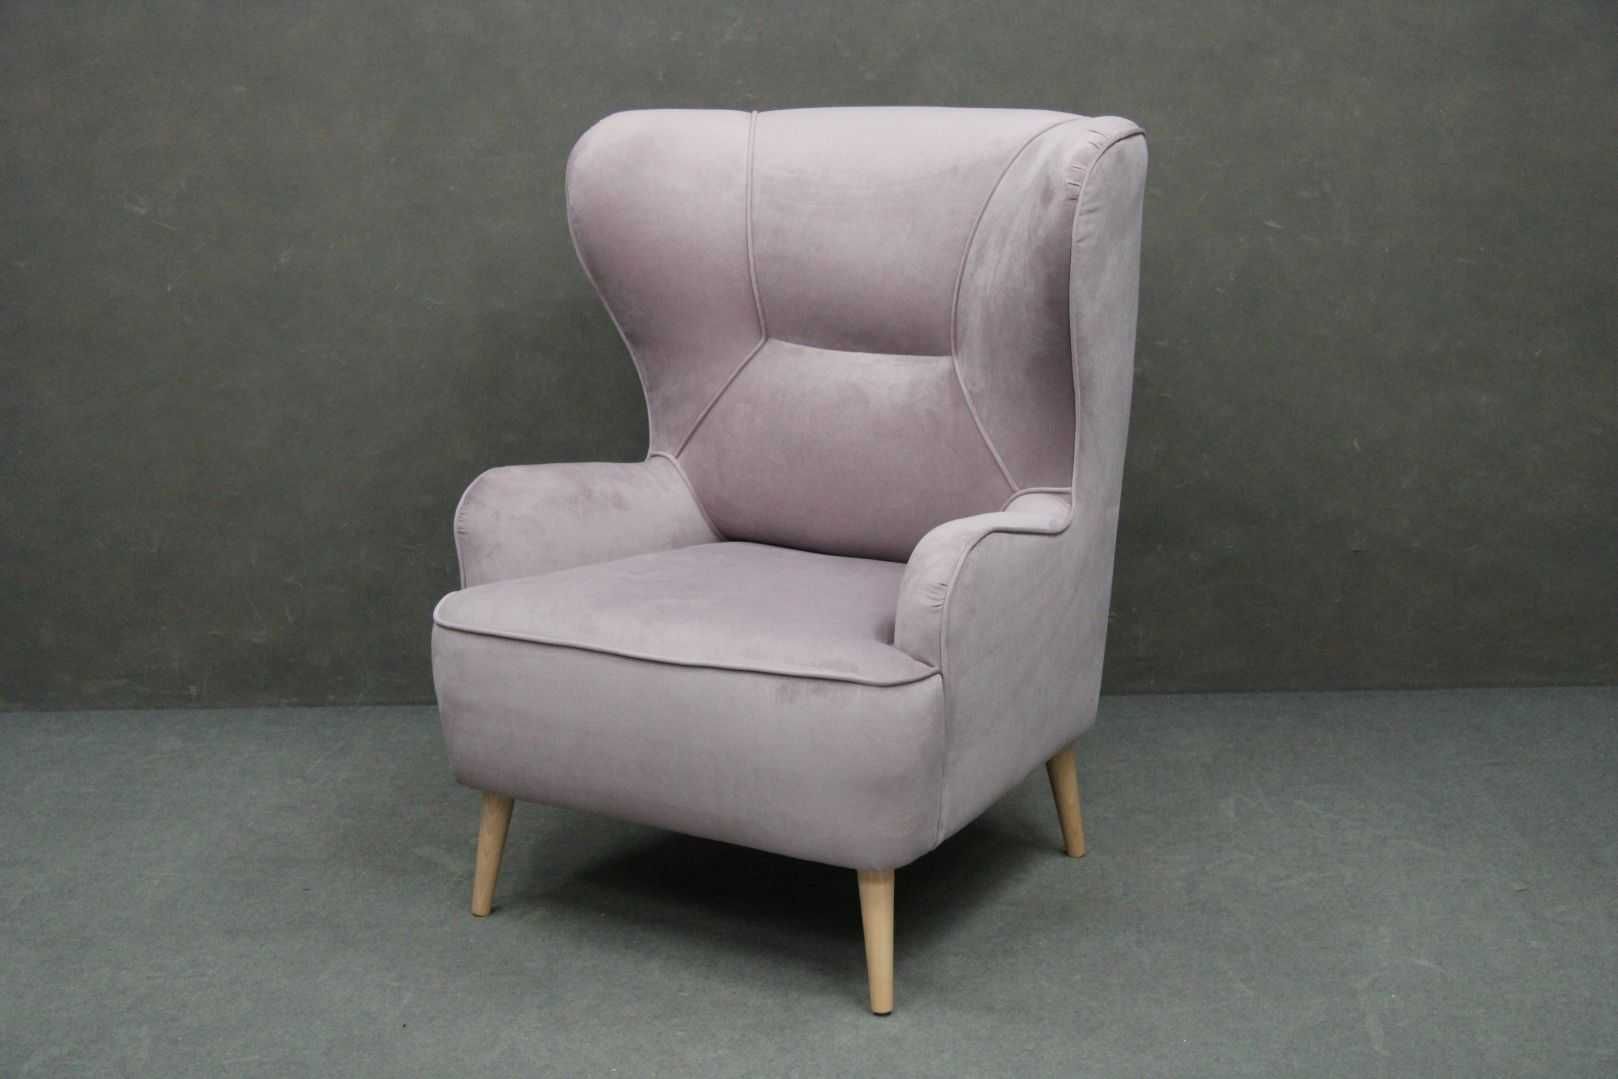 Fotel tapicerowany Uszak Moli różowy drewniany BGM24.pl B 6319 -24%